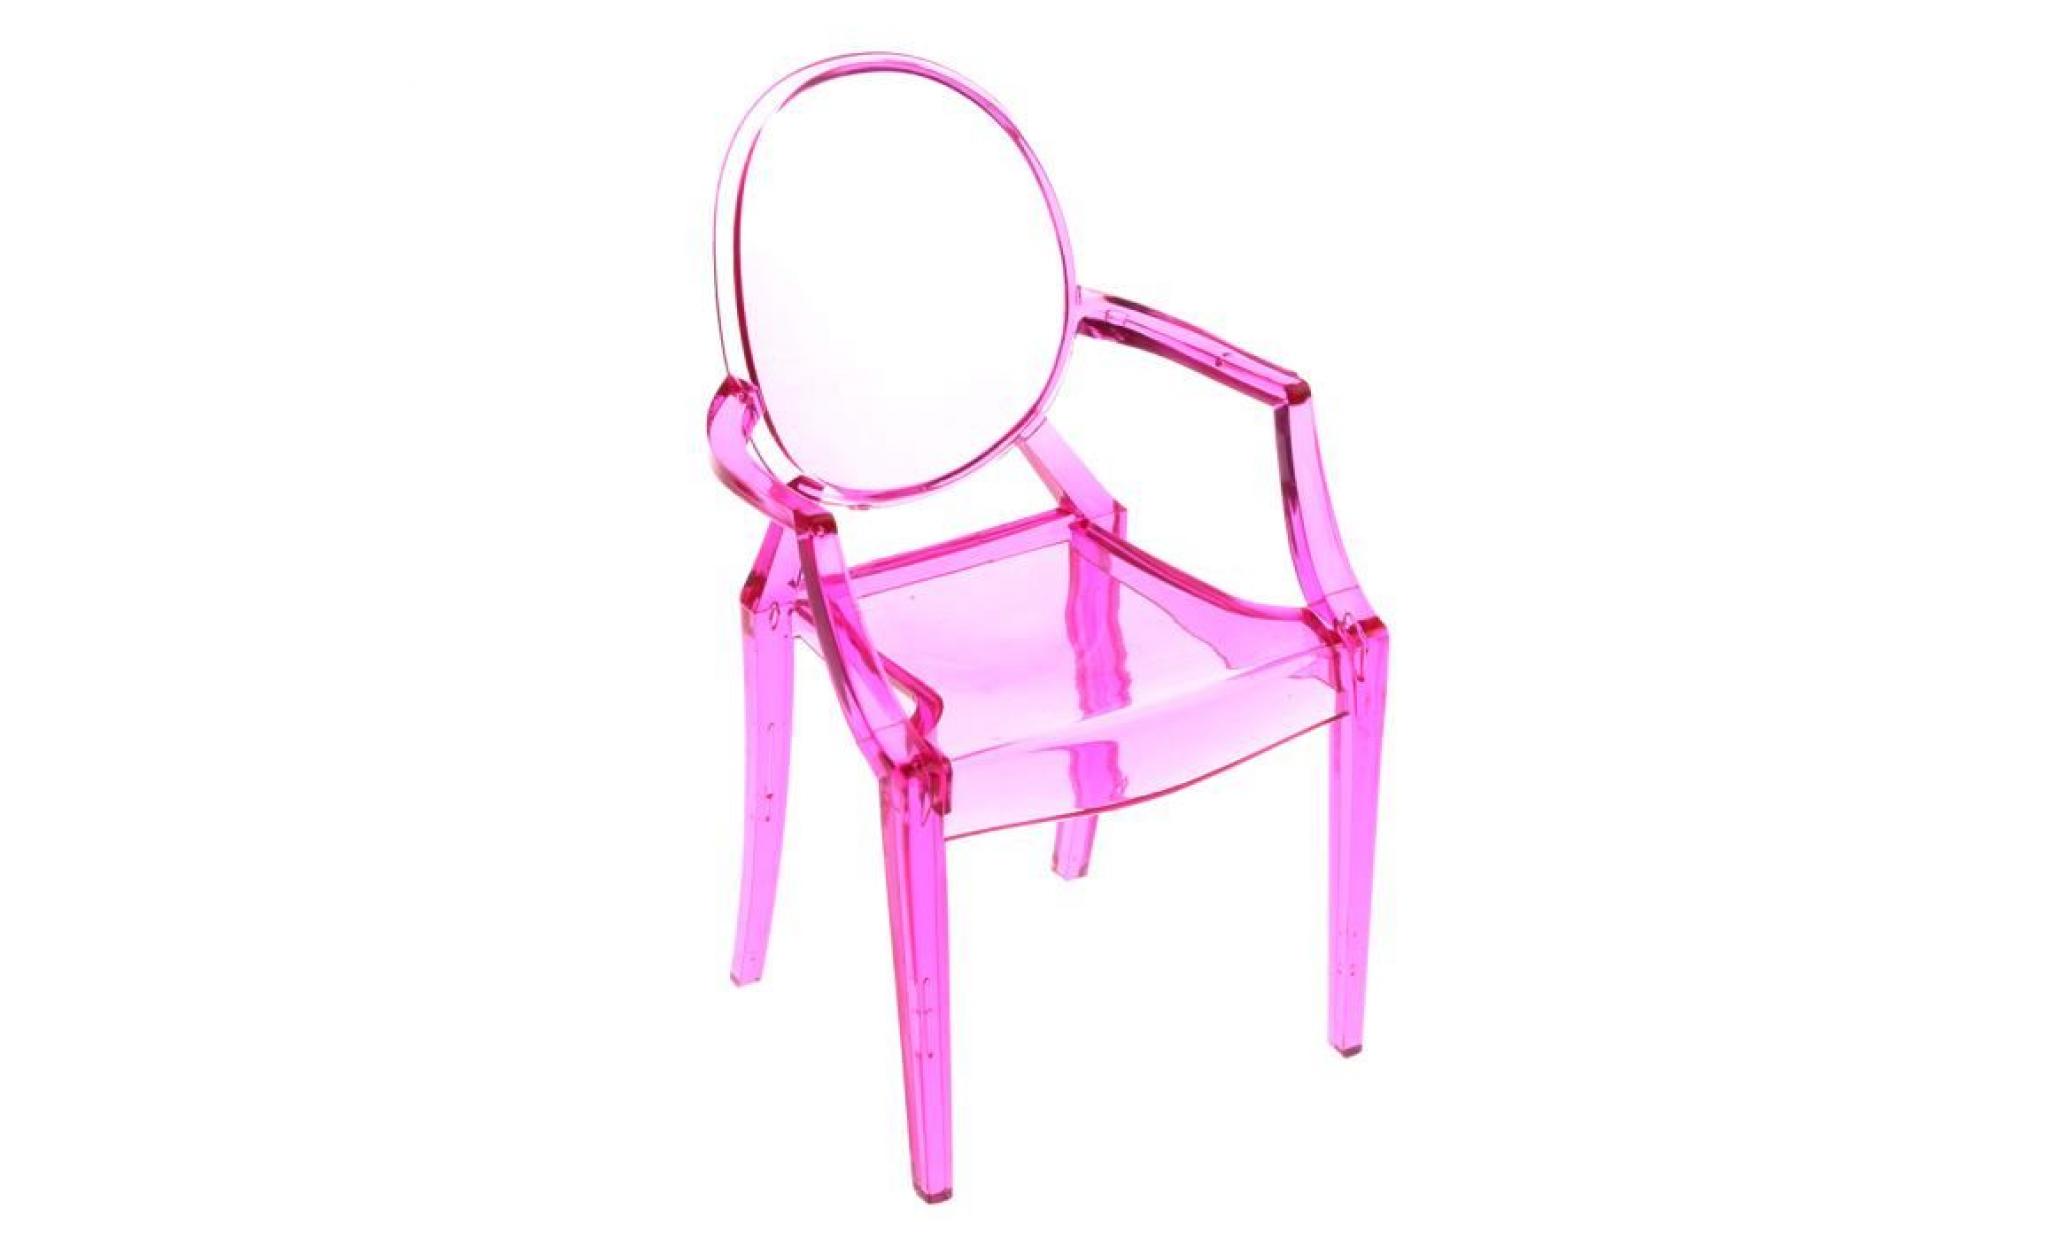 vetement  1 6 mobilier en chaise en plastique pour fauteuil barbie fuchsine ghost fauteuil